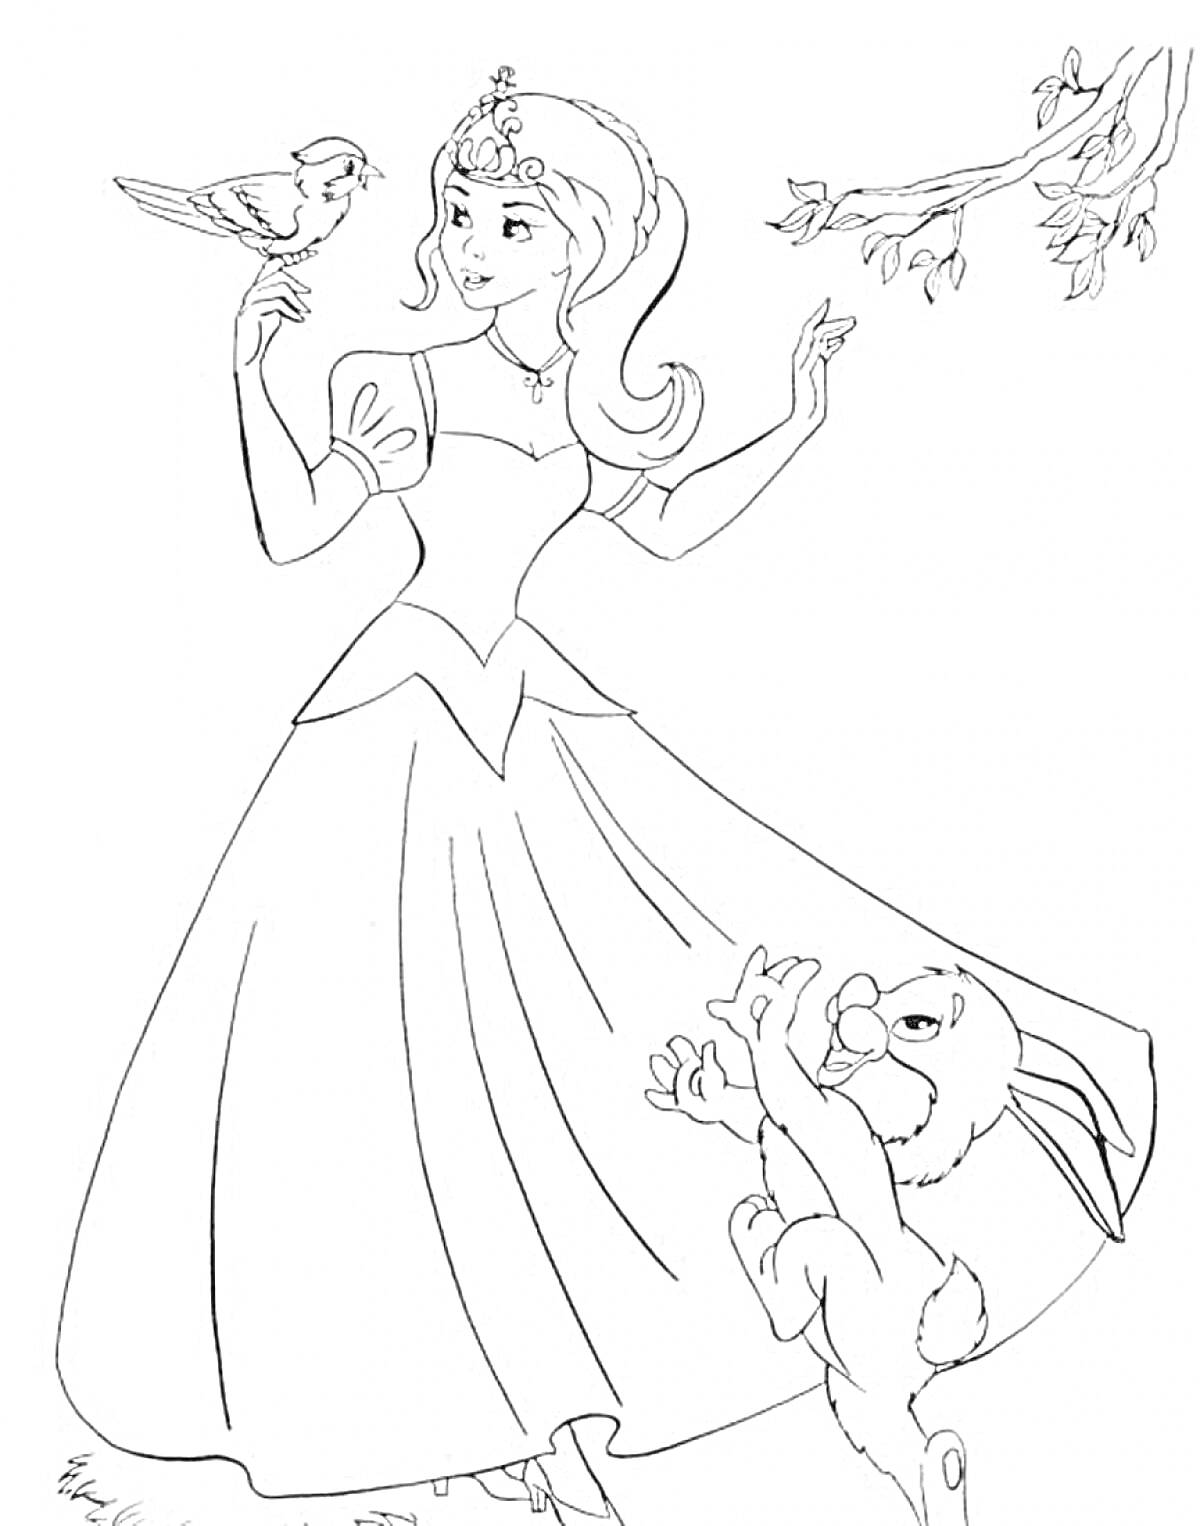 Раскраска Принцесса с птицей на руке и зайчиком у подола платья, ветка с листьями в правом верхнем углу